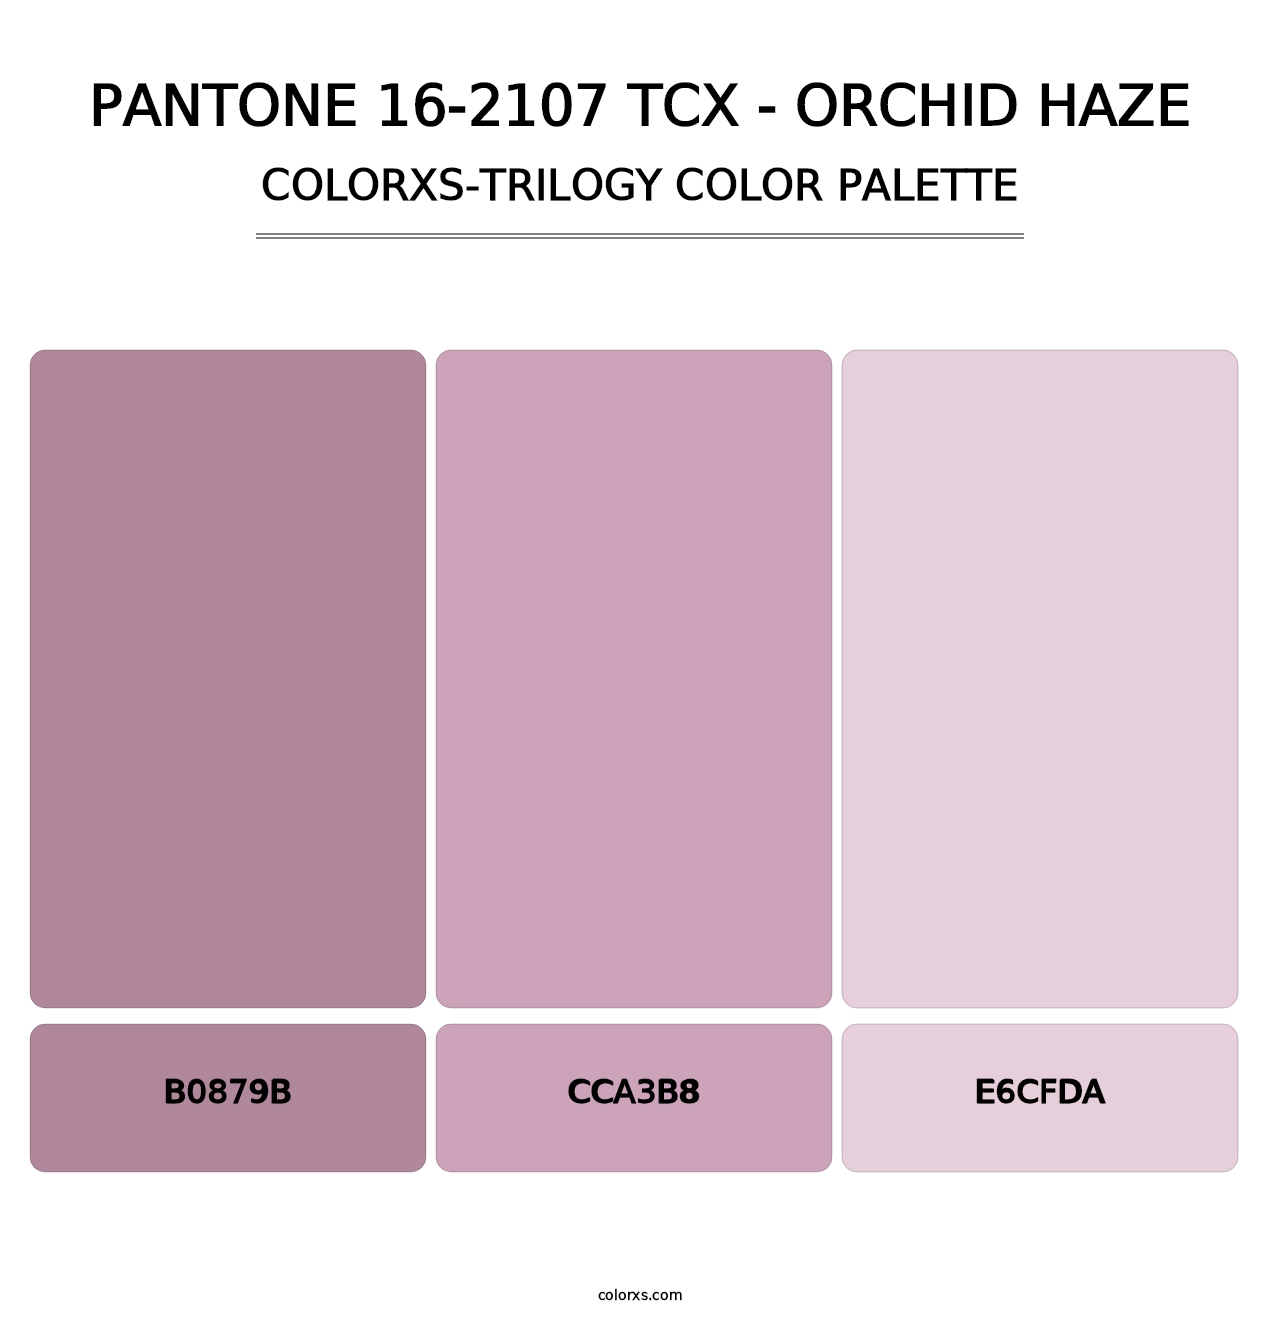 PANTONE 16-2107 TCX - Orchid Haze - Colorxs Trilogy Palette